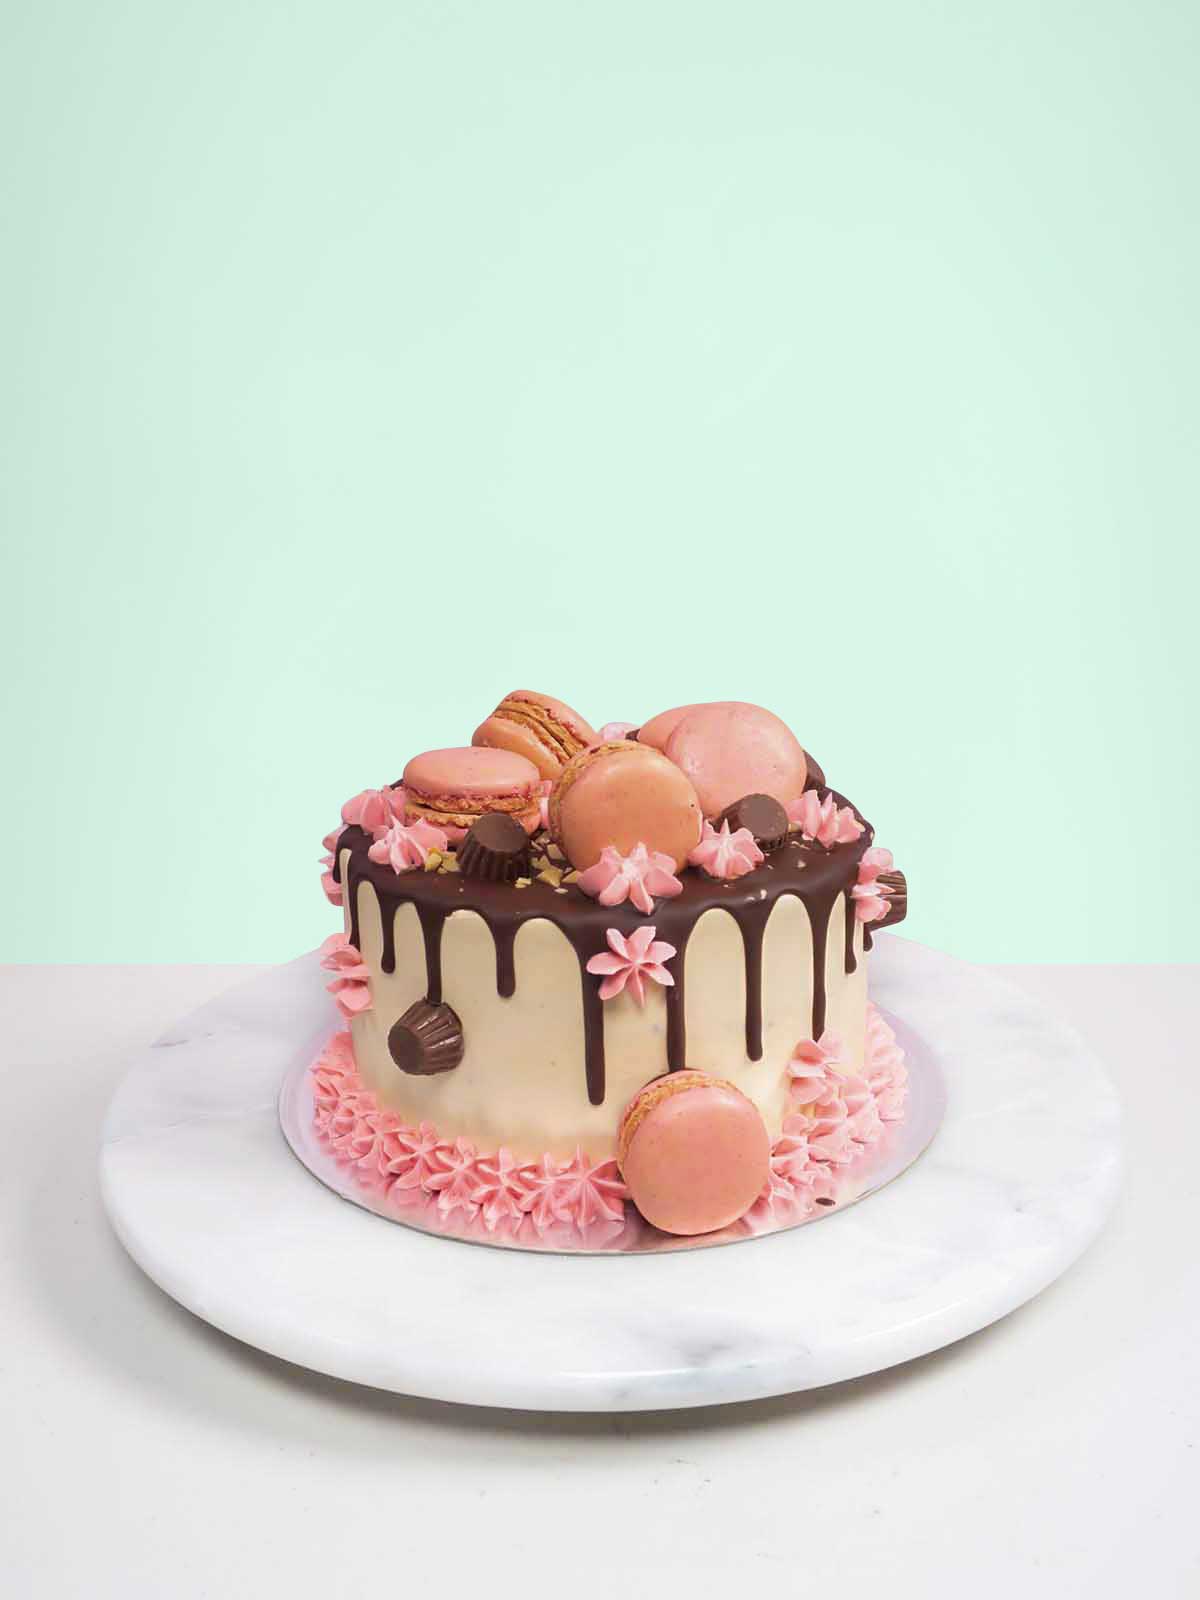 birthday cake designs for women mattapoisett ma area — Artisan Bake Shop